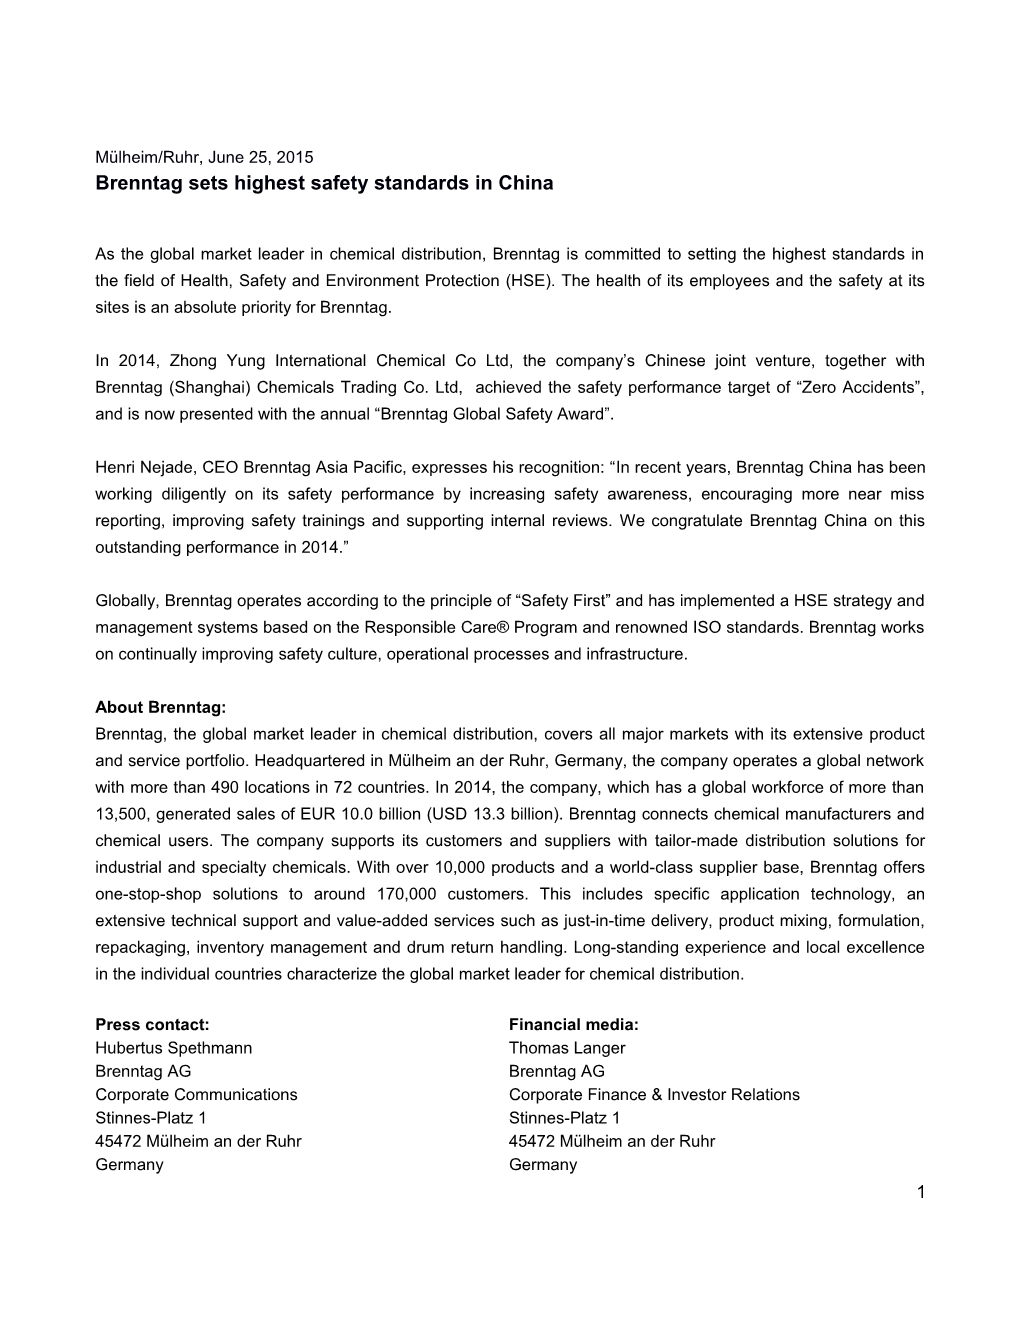 Mülheim/Ruhr, June 25, 2015 Brenntag Sets Highest Safety Standards in China